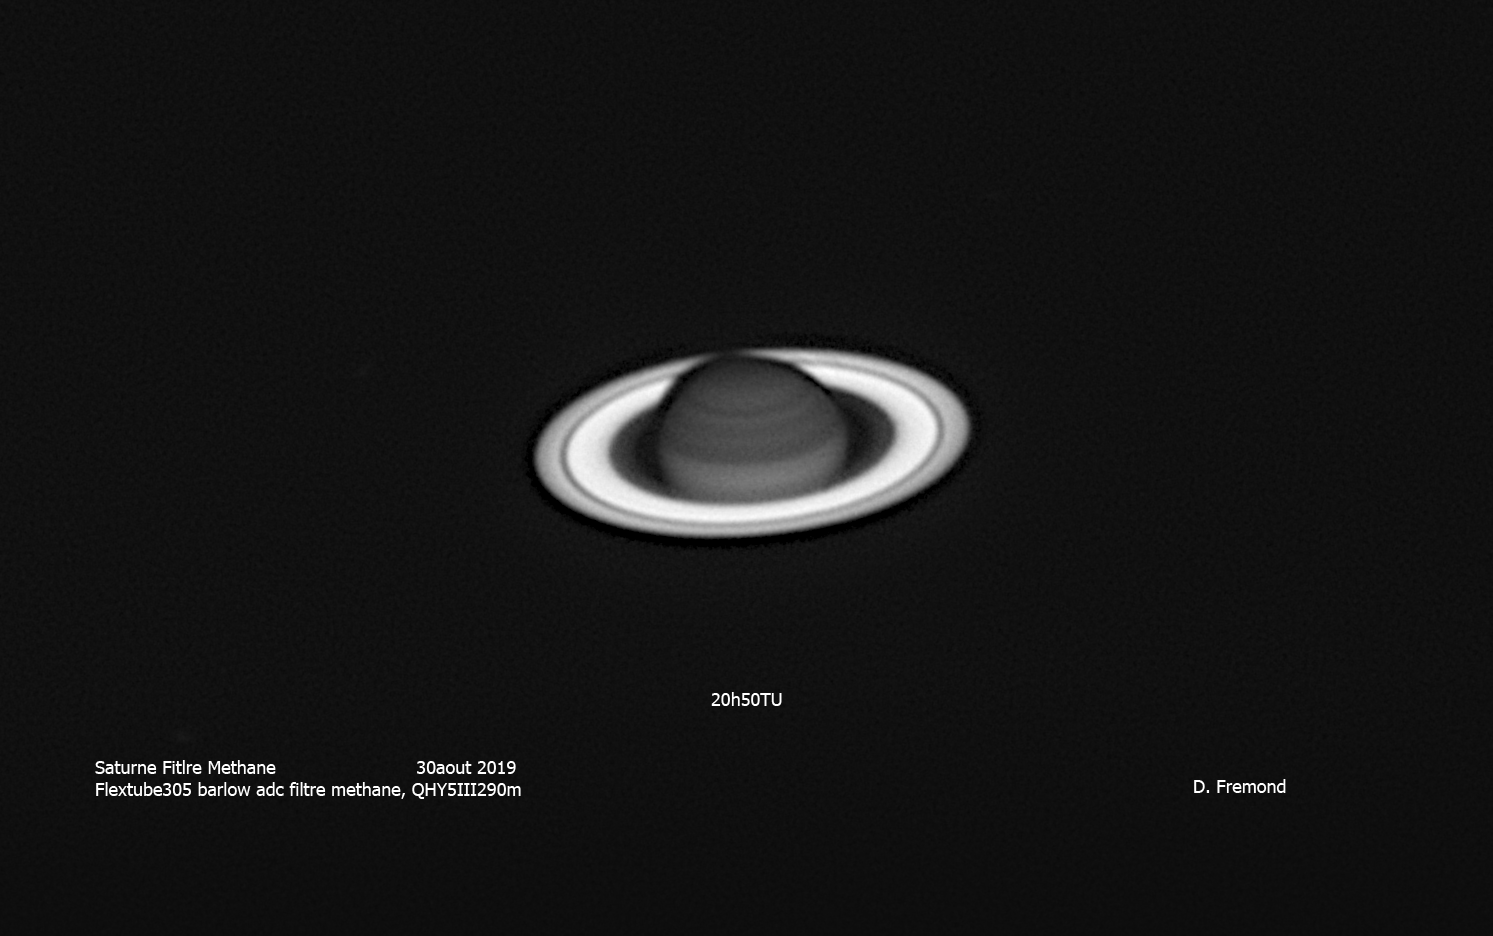 Saturne filtre methane 30 aout 2019, 20h50-21h20 TU